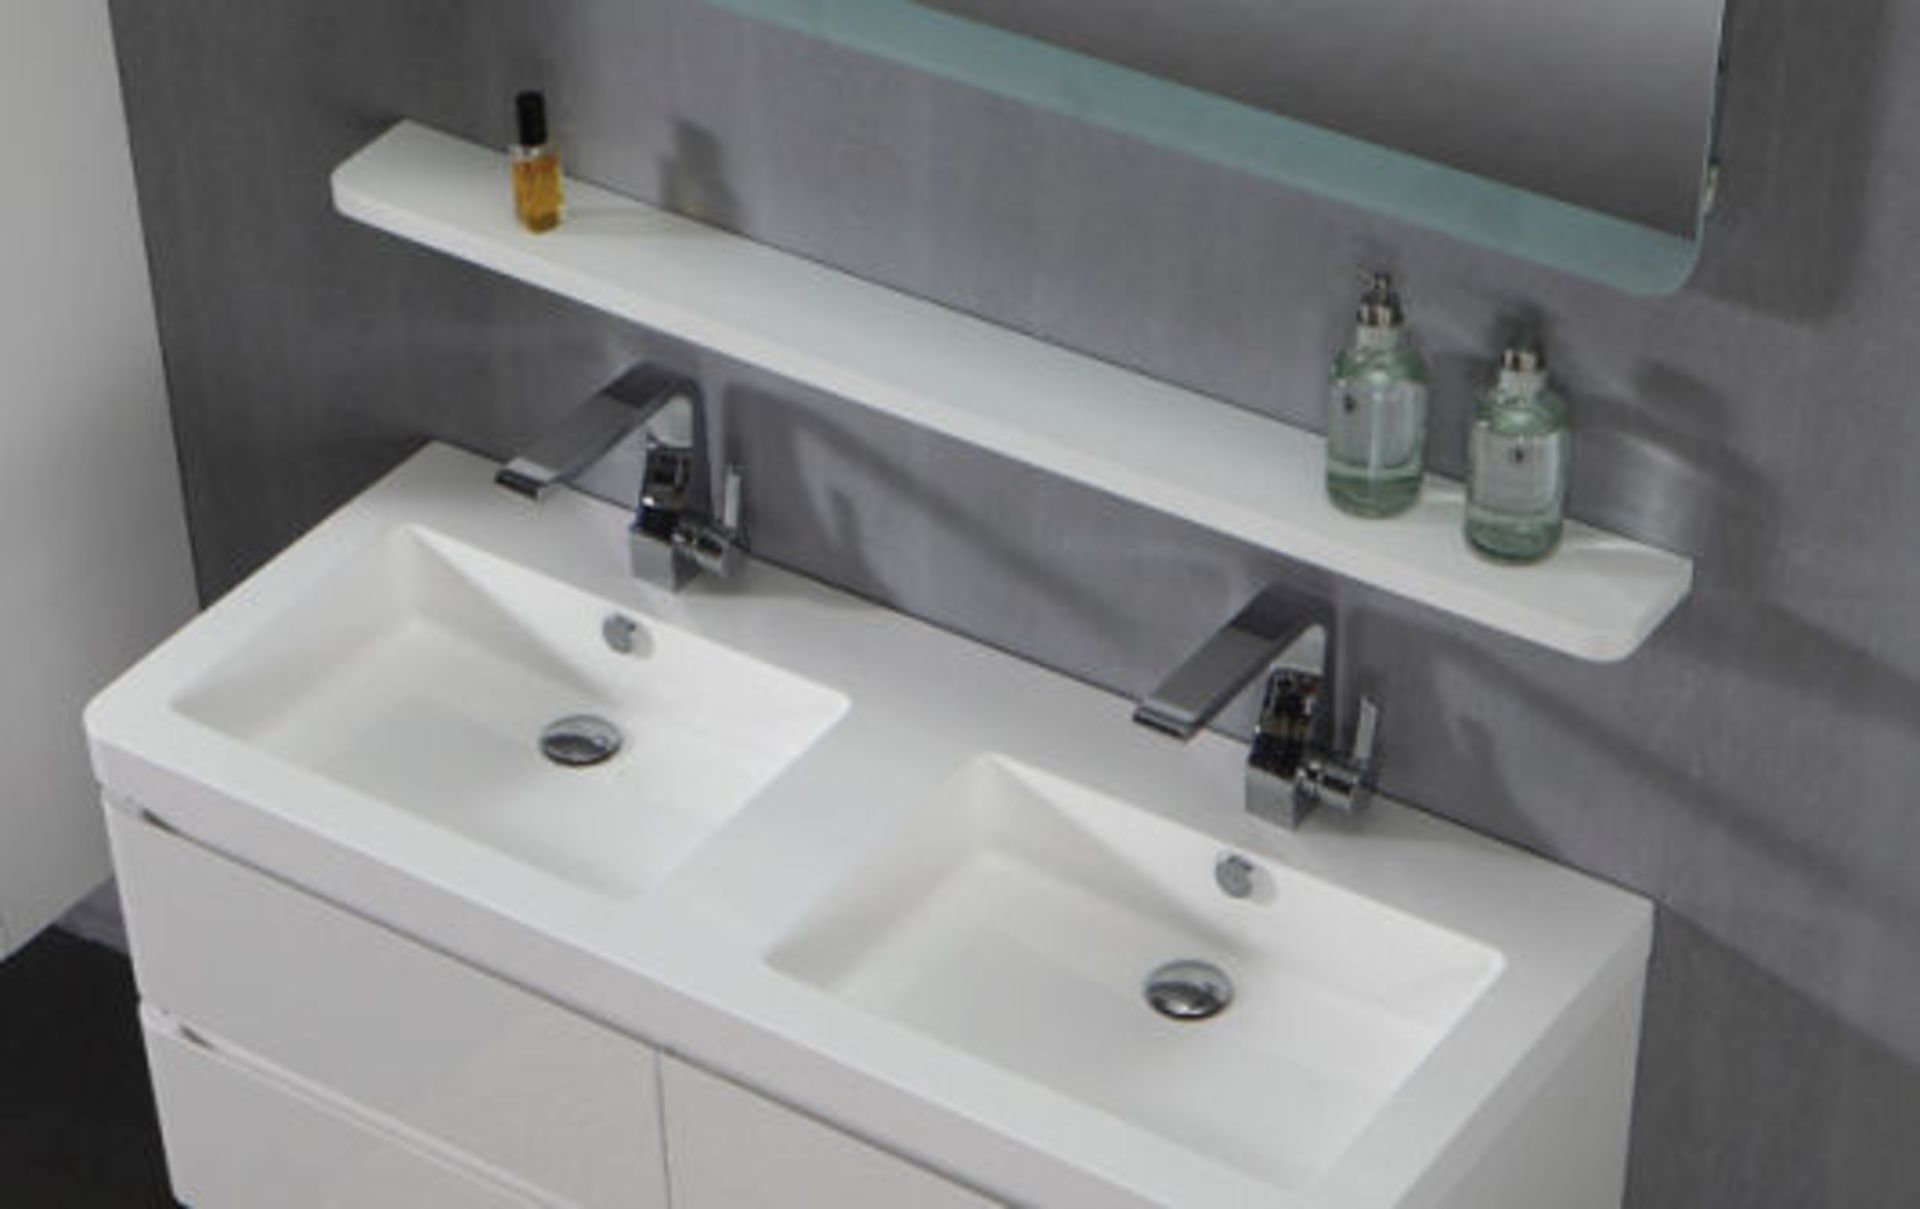 1 x Contemporary Bathroom Storage Shelf 120 - A-Grade - Ref:ASH120 - CL170 - Location: Nottingham - Image 3 of 3